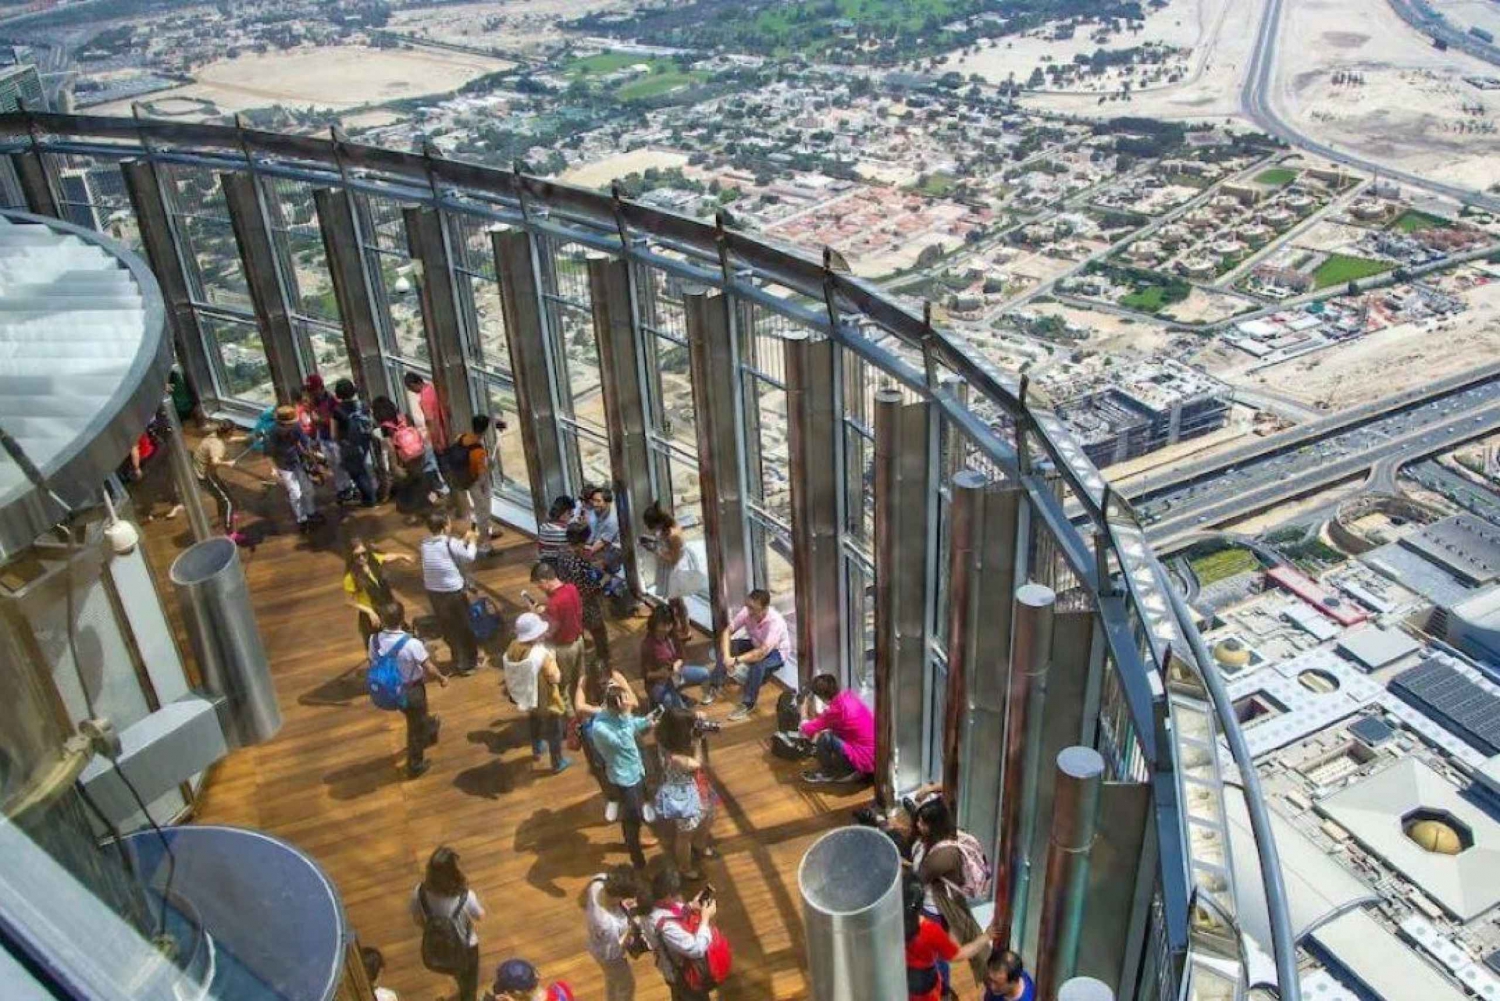 Entrée au sommet de Burj Khalifa et thé de l'après-midi à Al Bayt